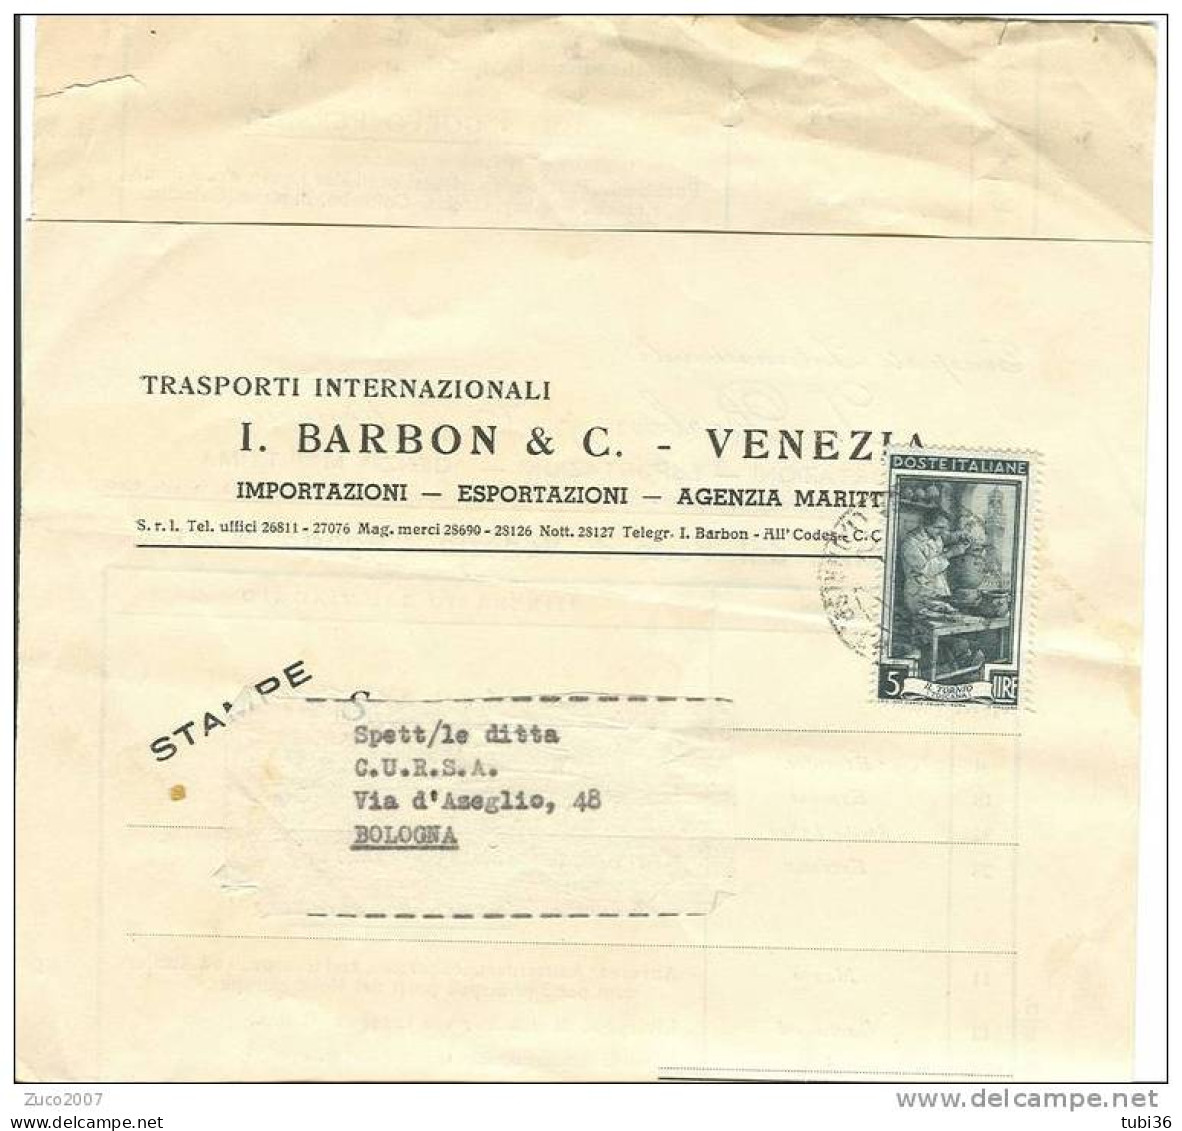 BARBON E C. - VENEZIA - TRASPORTI INTERNAZIONALI - CALENDARIO PARTENZE DAL PORTO DI VENEZIA  1952. - World